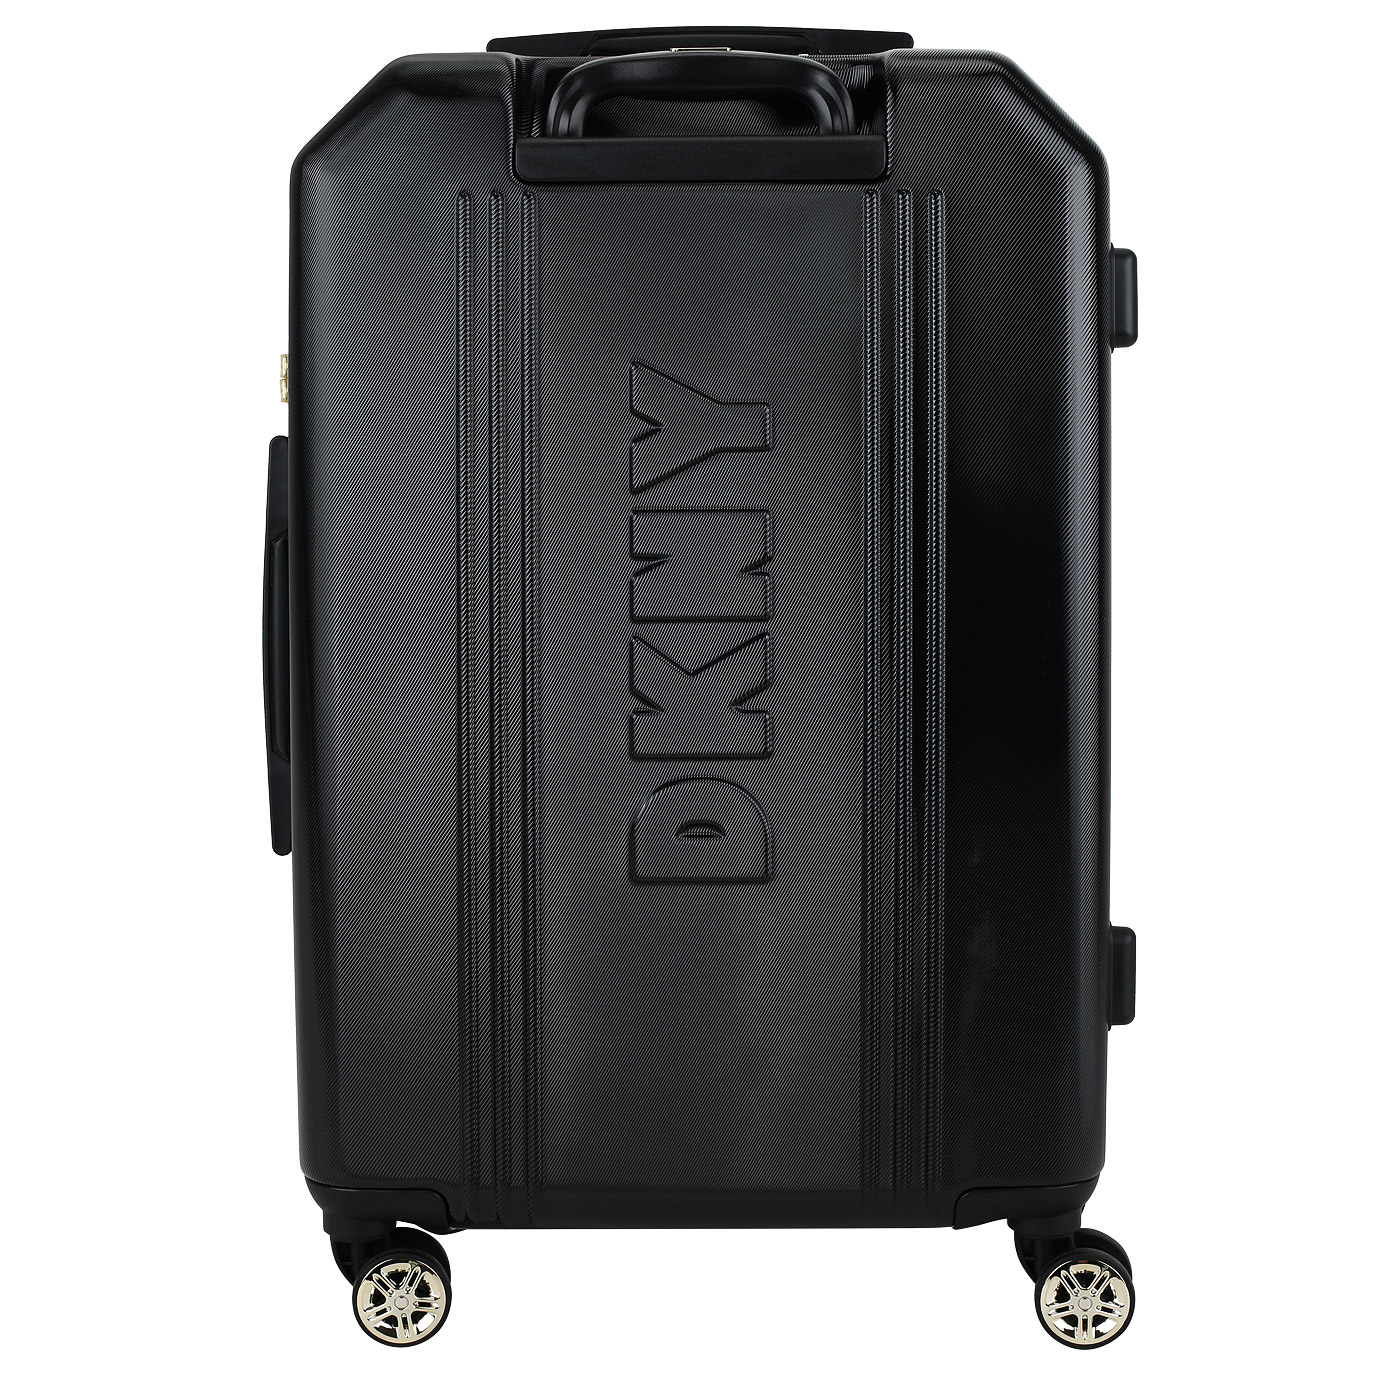 Чемодан средний M из ABS-пластика DKNY DKNY-1025 Show stopper